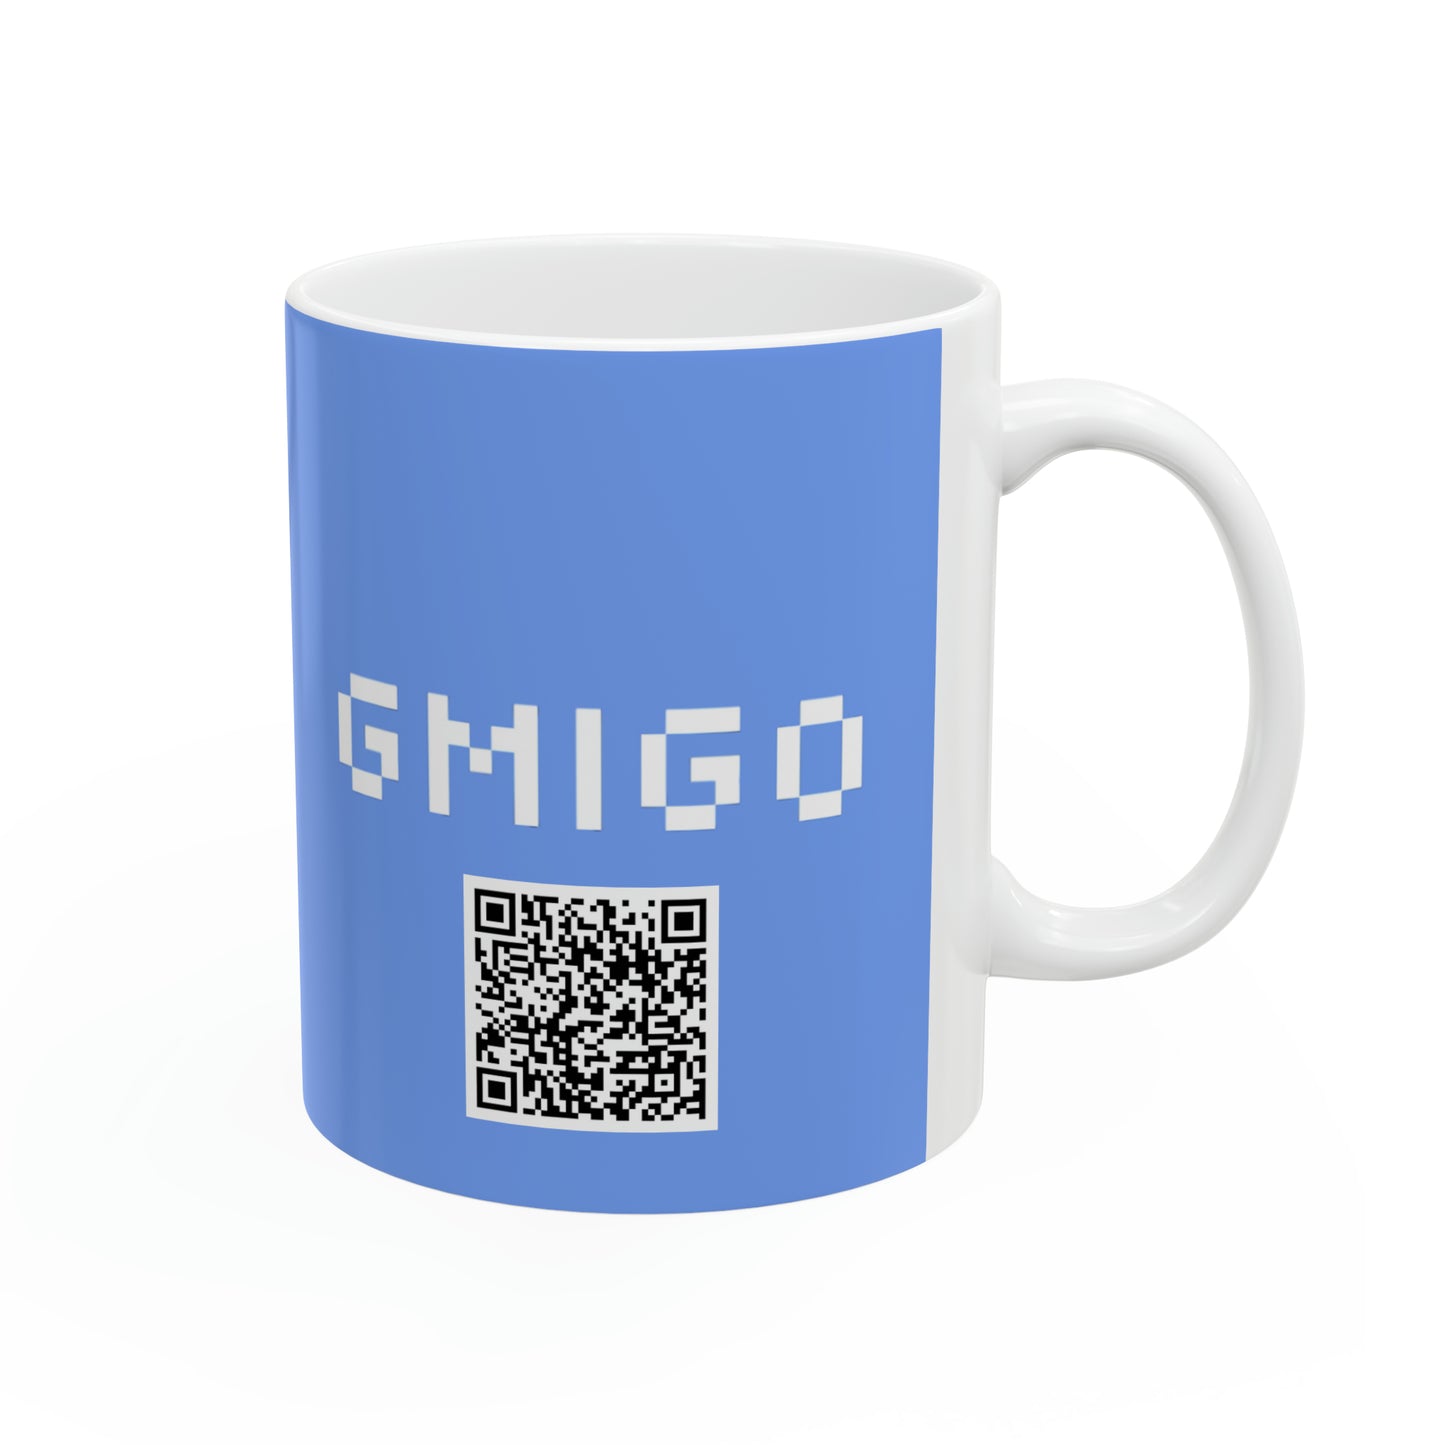 GMIGO - Ceramic Mug 11oz - Kalaballa